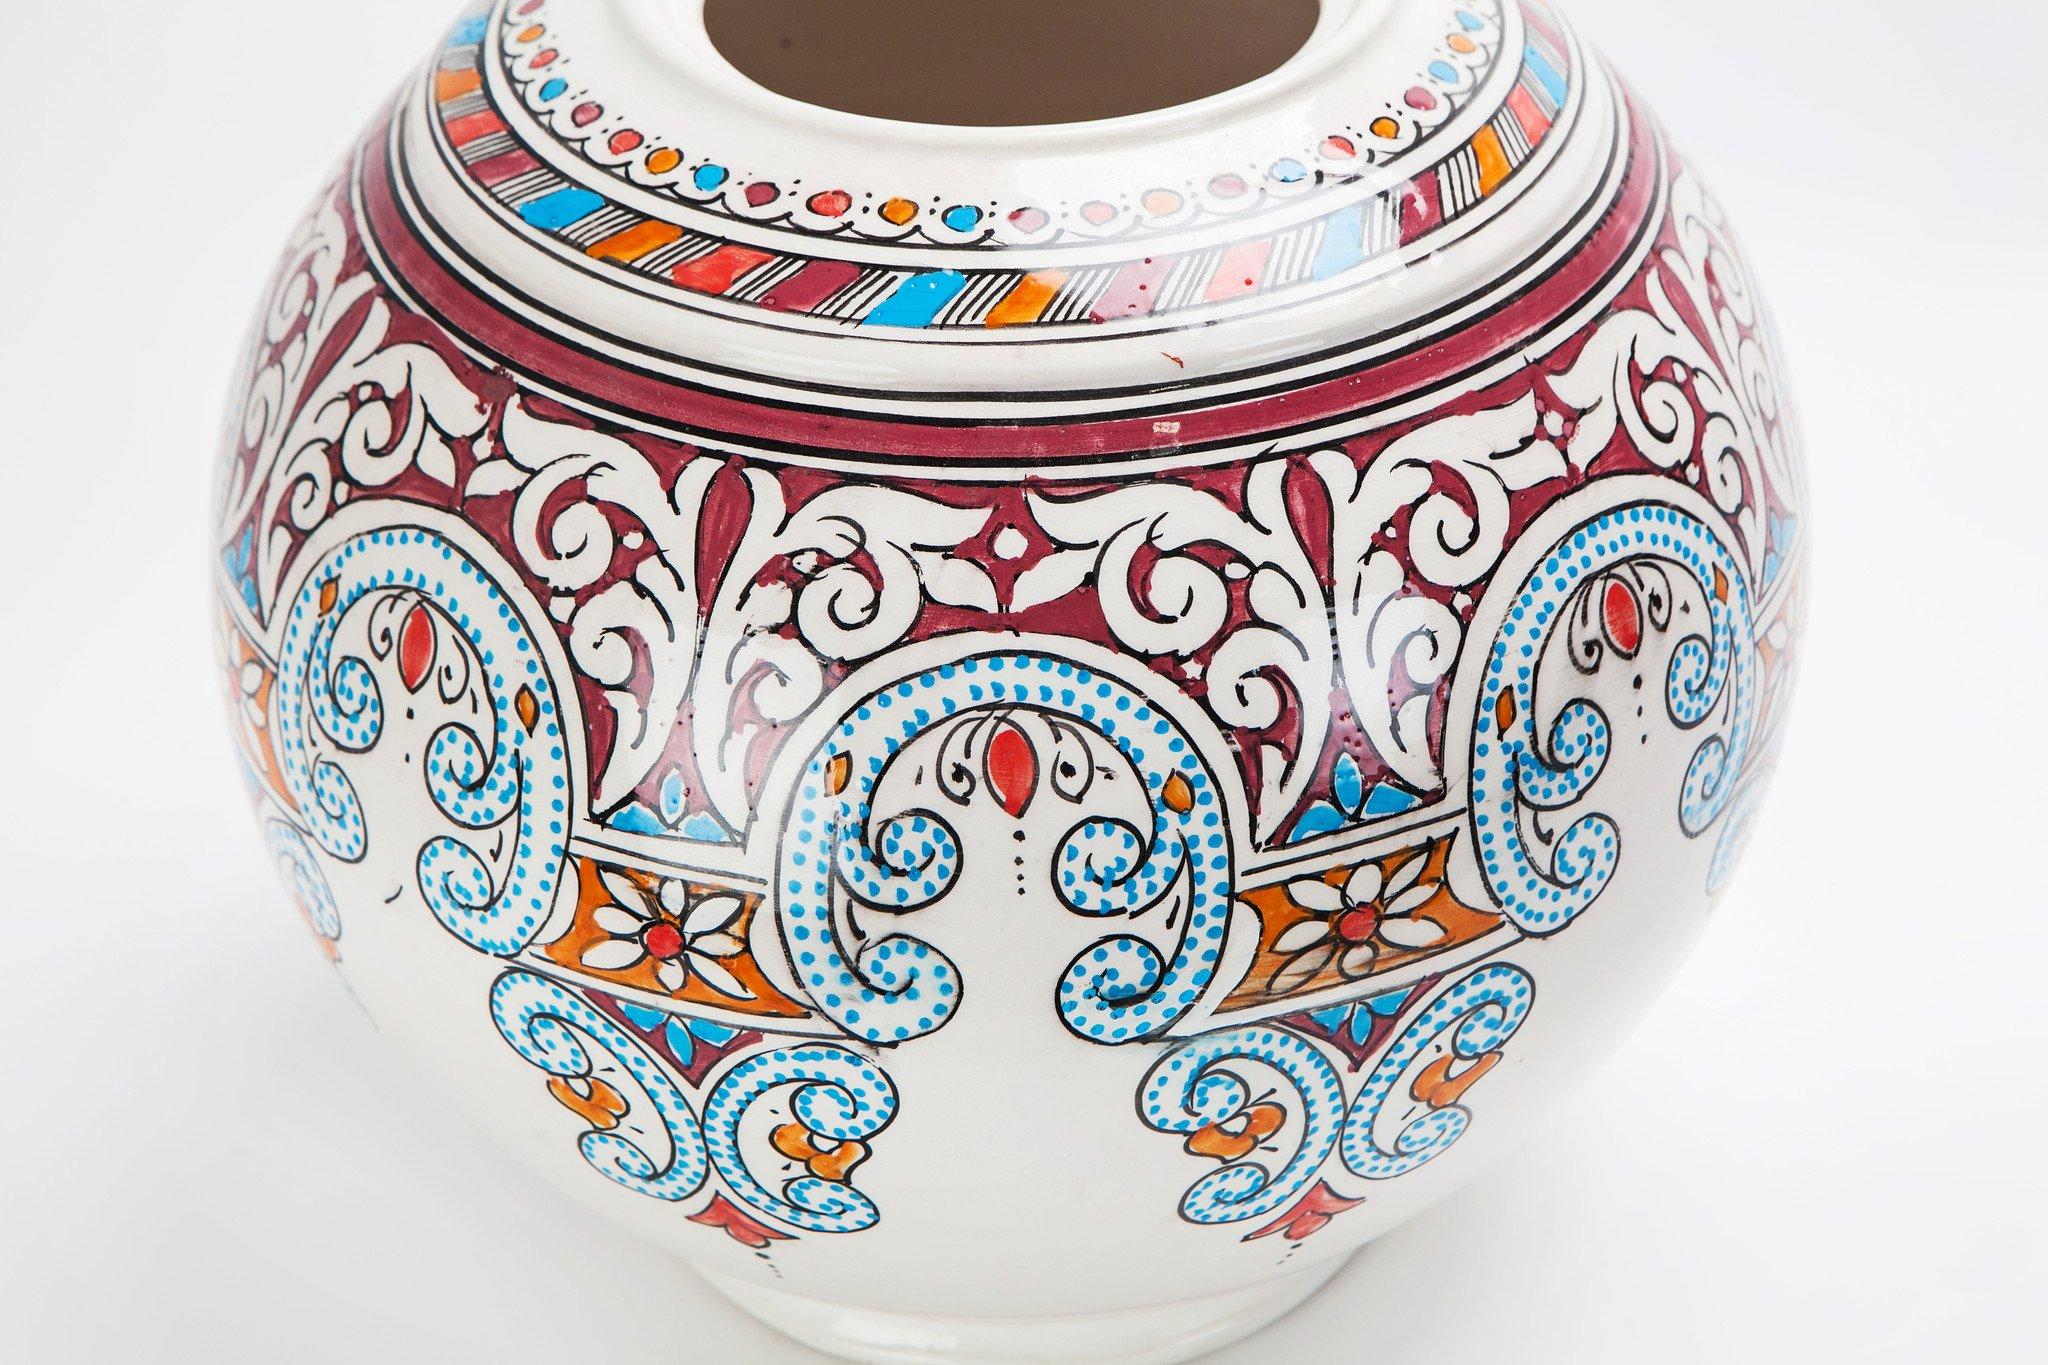 Diese schöne handbemalte runde Vase oder Urne aus marokkanischer Keramik verfügt über wunderbar komplizierte und phantasievoll aufeinanderfolgende handgemalte Motive. Diese farbenfrohe, runde, kugelförmige Keramikvase verleiht jedem Raum einen Hauch